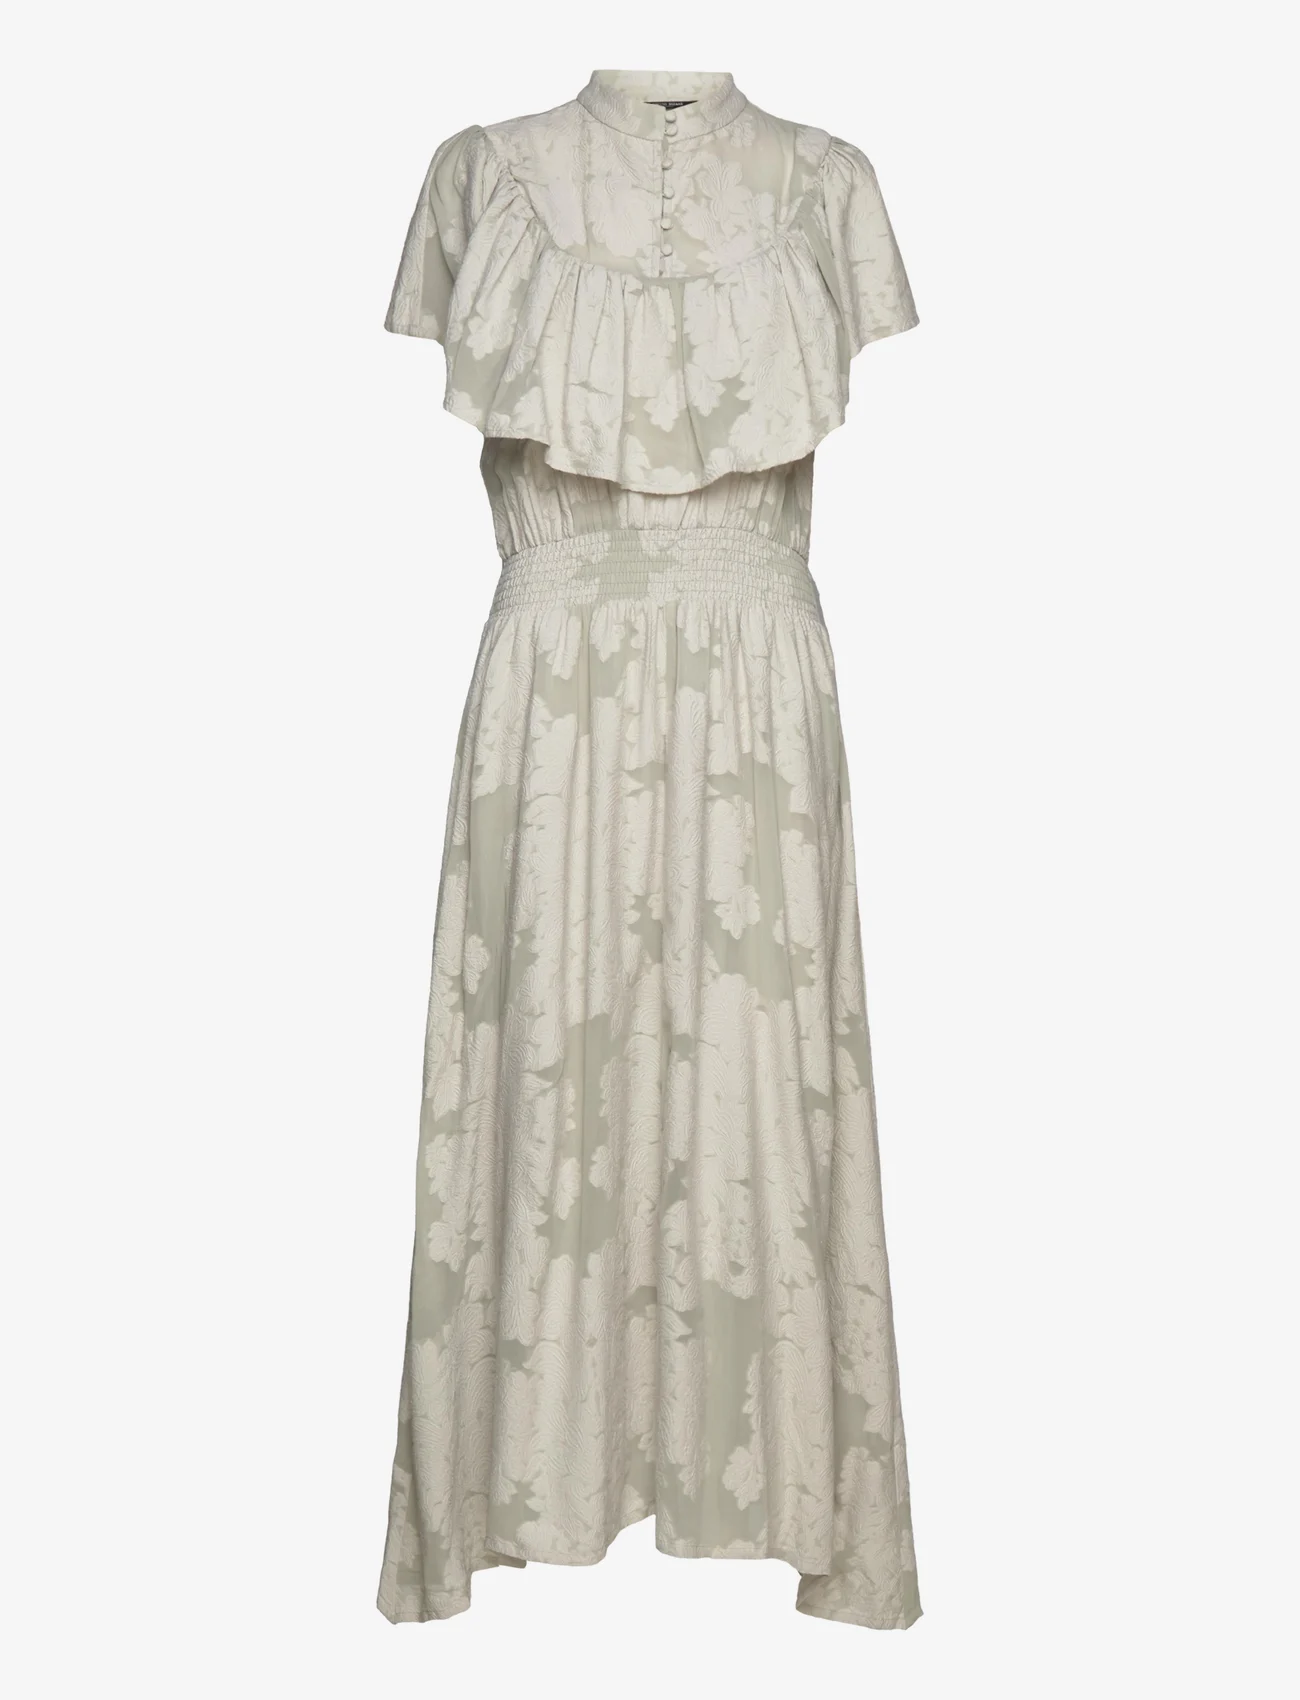 Bruuns Bazaar - Godetia Mathilde dress - odzież imprezowa w cenach outletowych - fox grey - 0